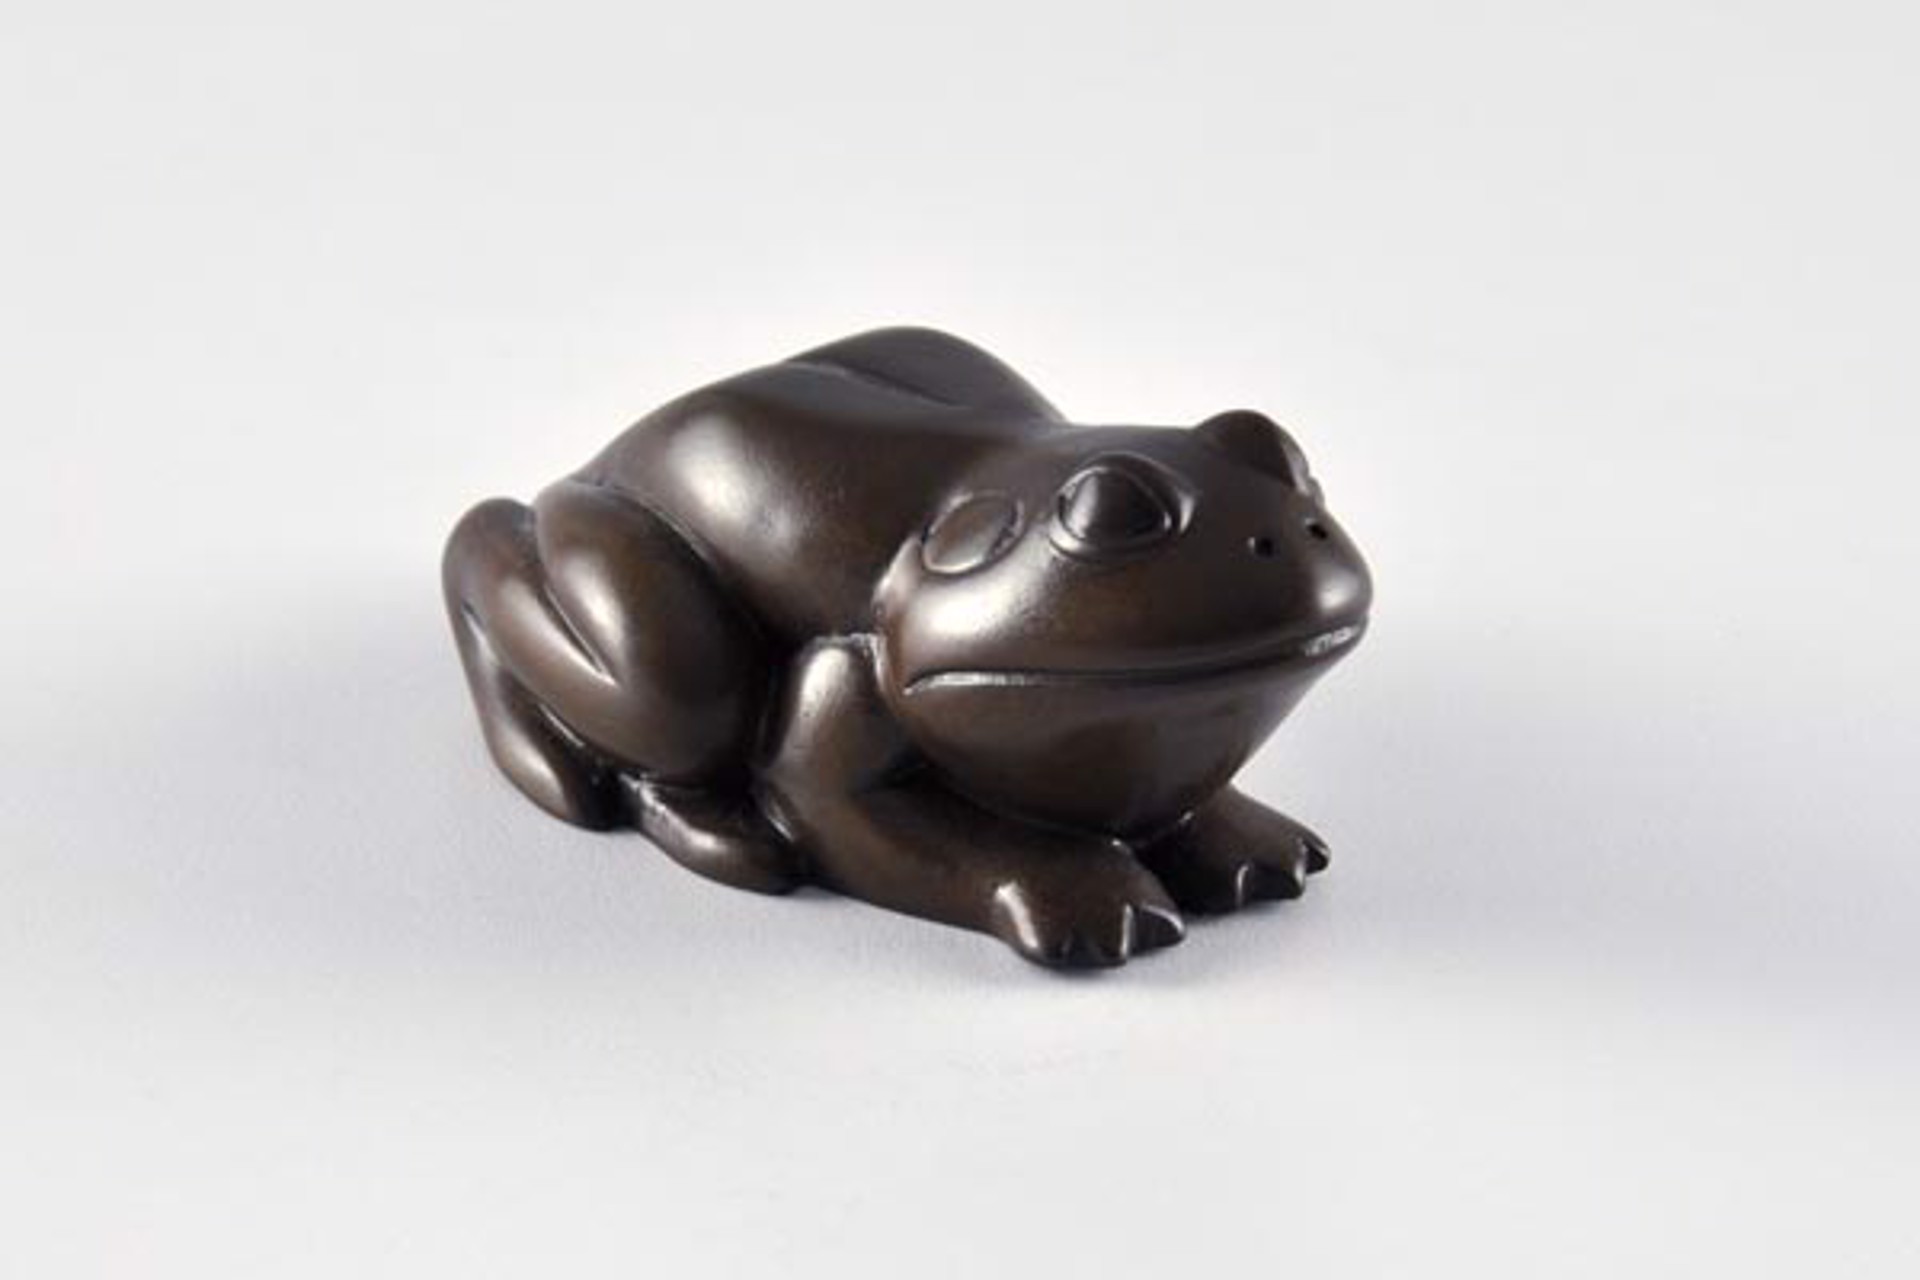 Bull Frog by David Everett